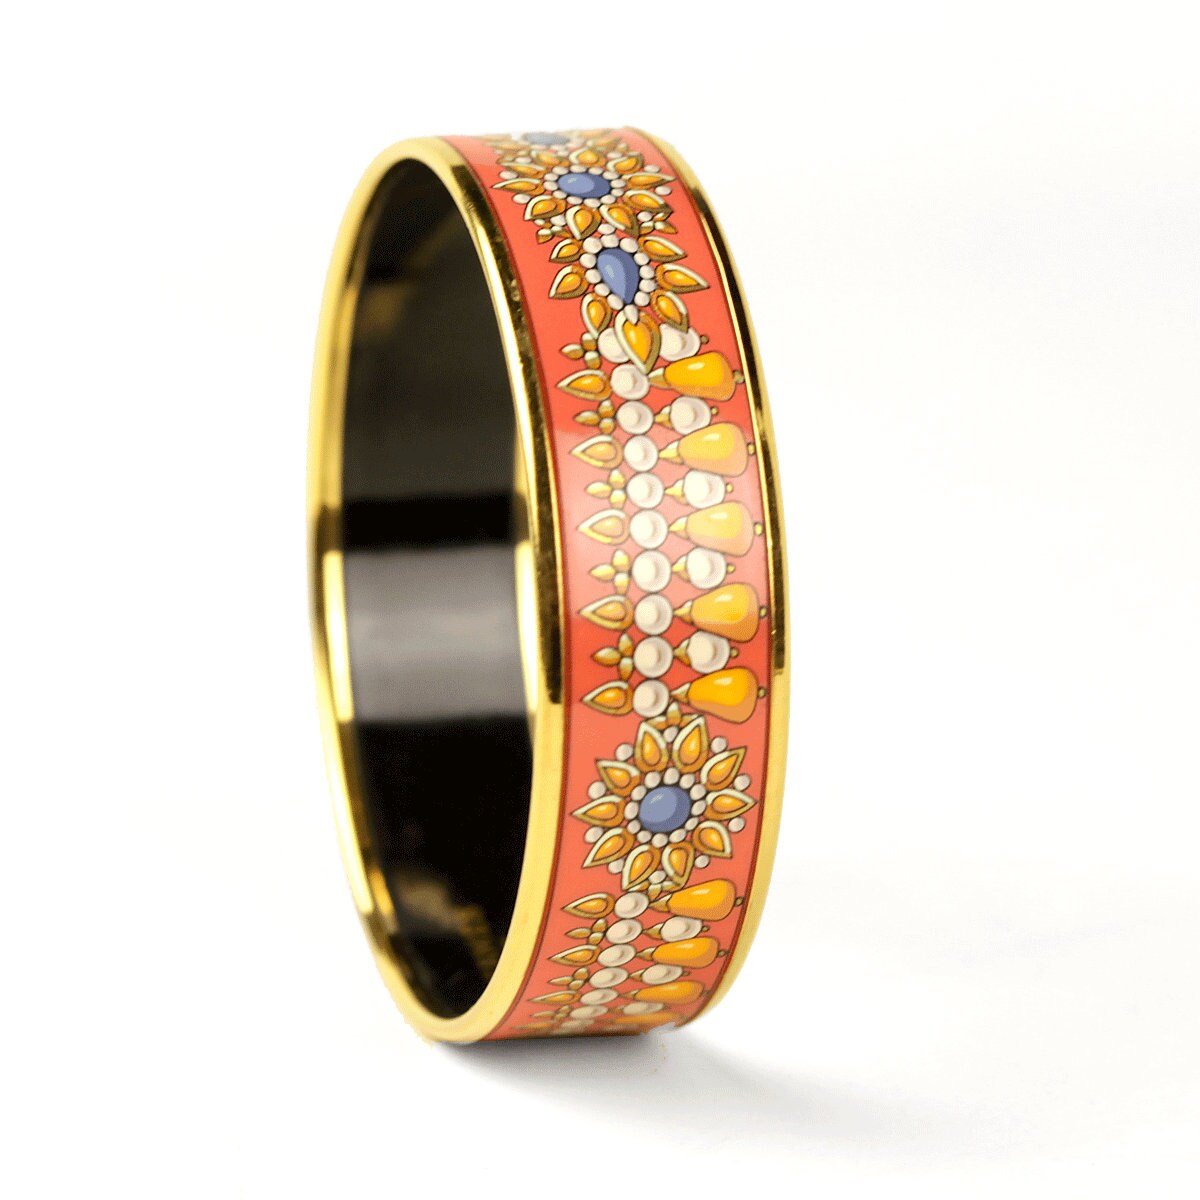 Hermes Bracelet 65 Wide Gold Enamel Jewels Pattern | Bangle GHW